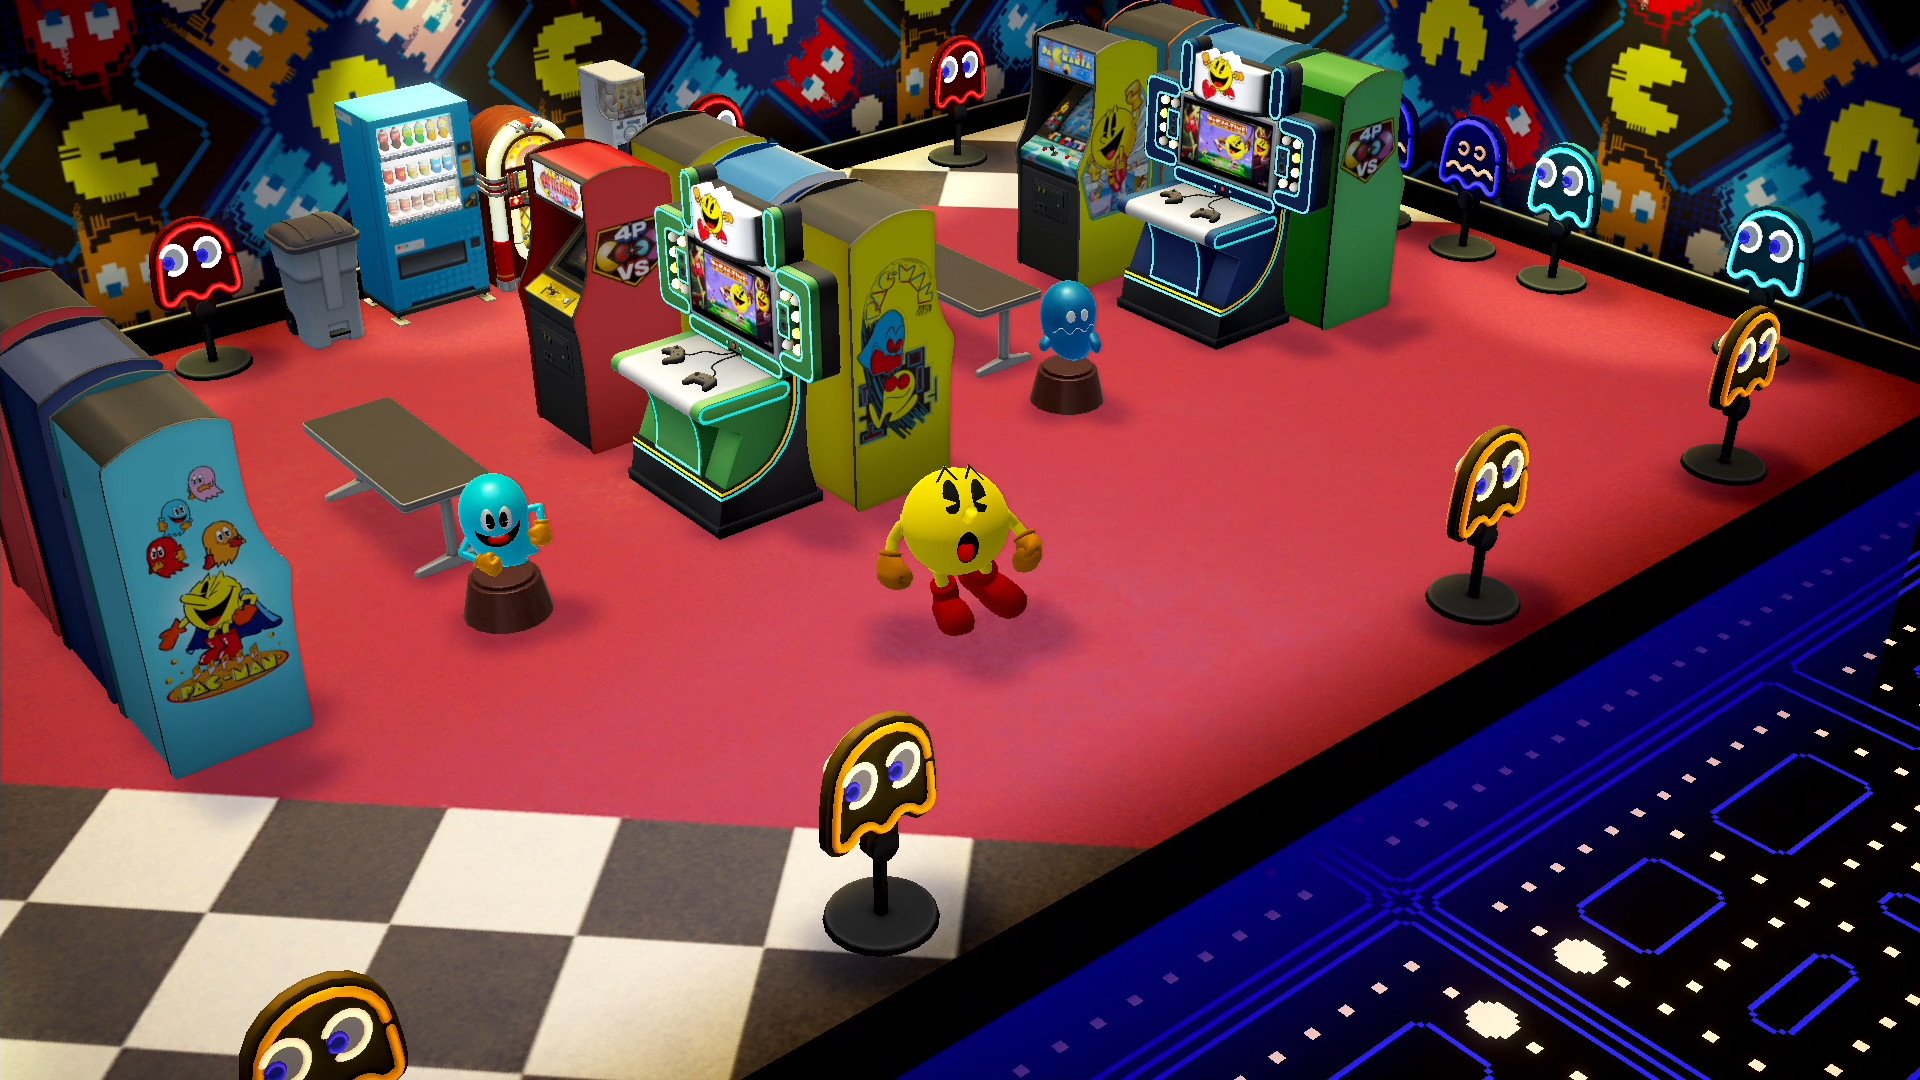 Análise: Pac-Man Museum + (Multi) é uma reunião de vários clássicos  divertidos em uma coletânea simples e agradável - GameBlast